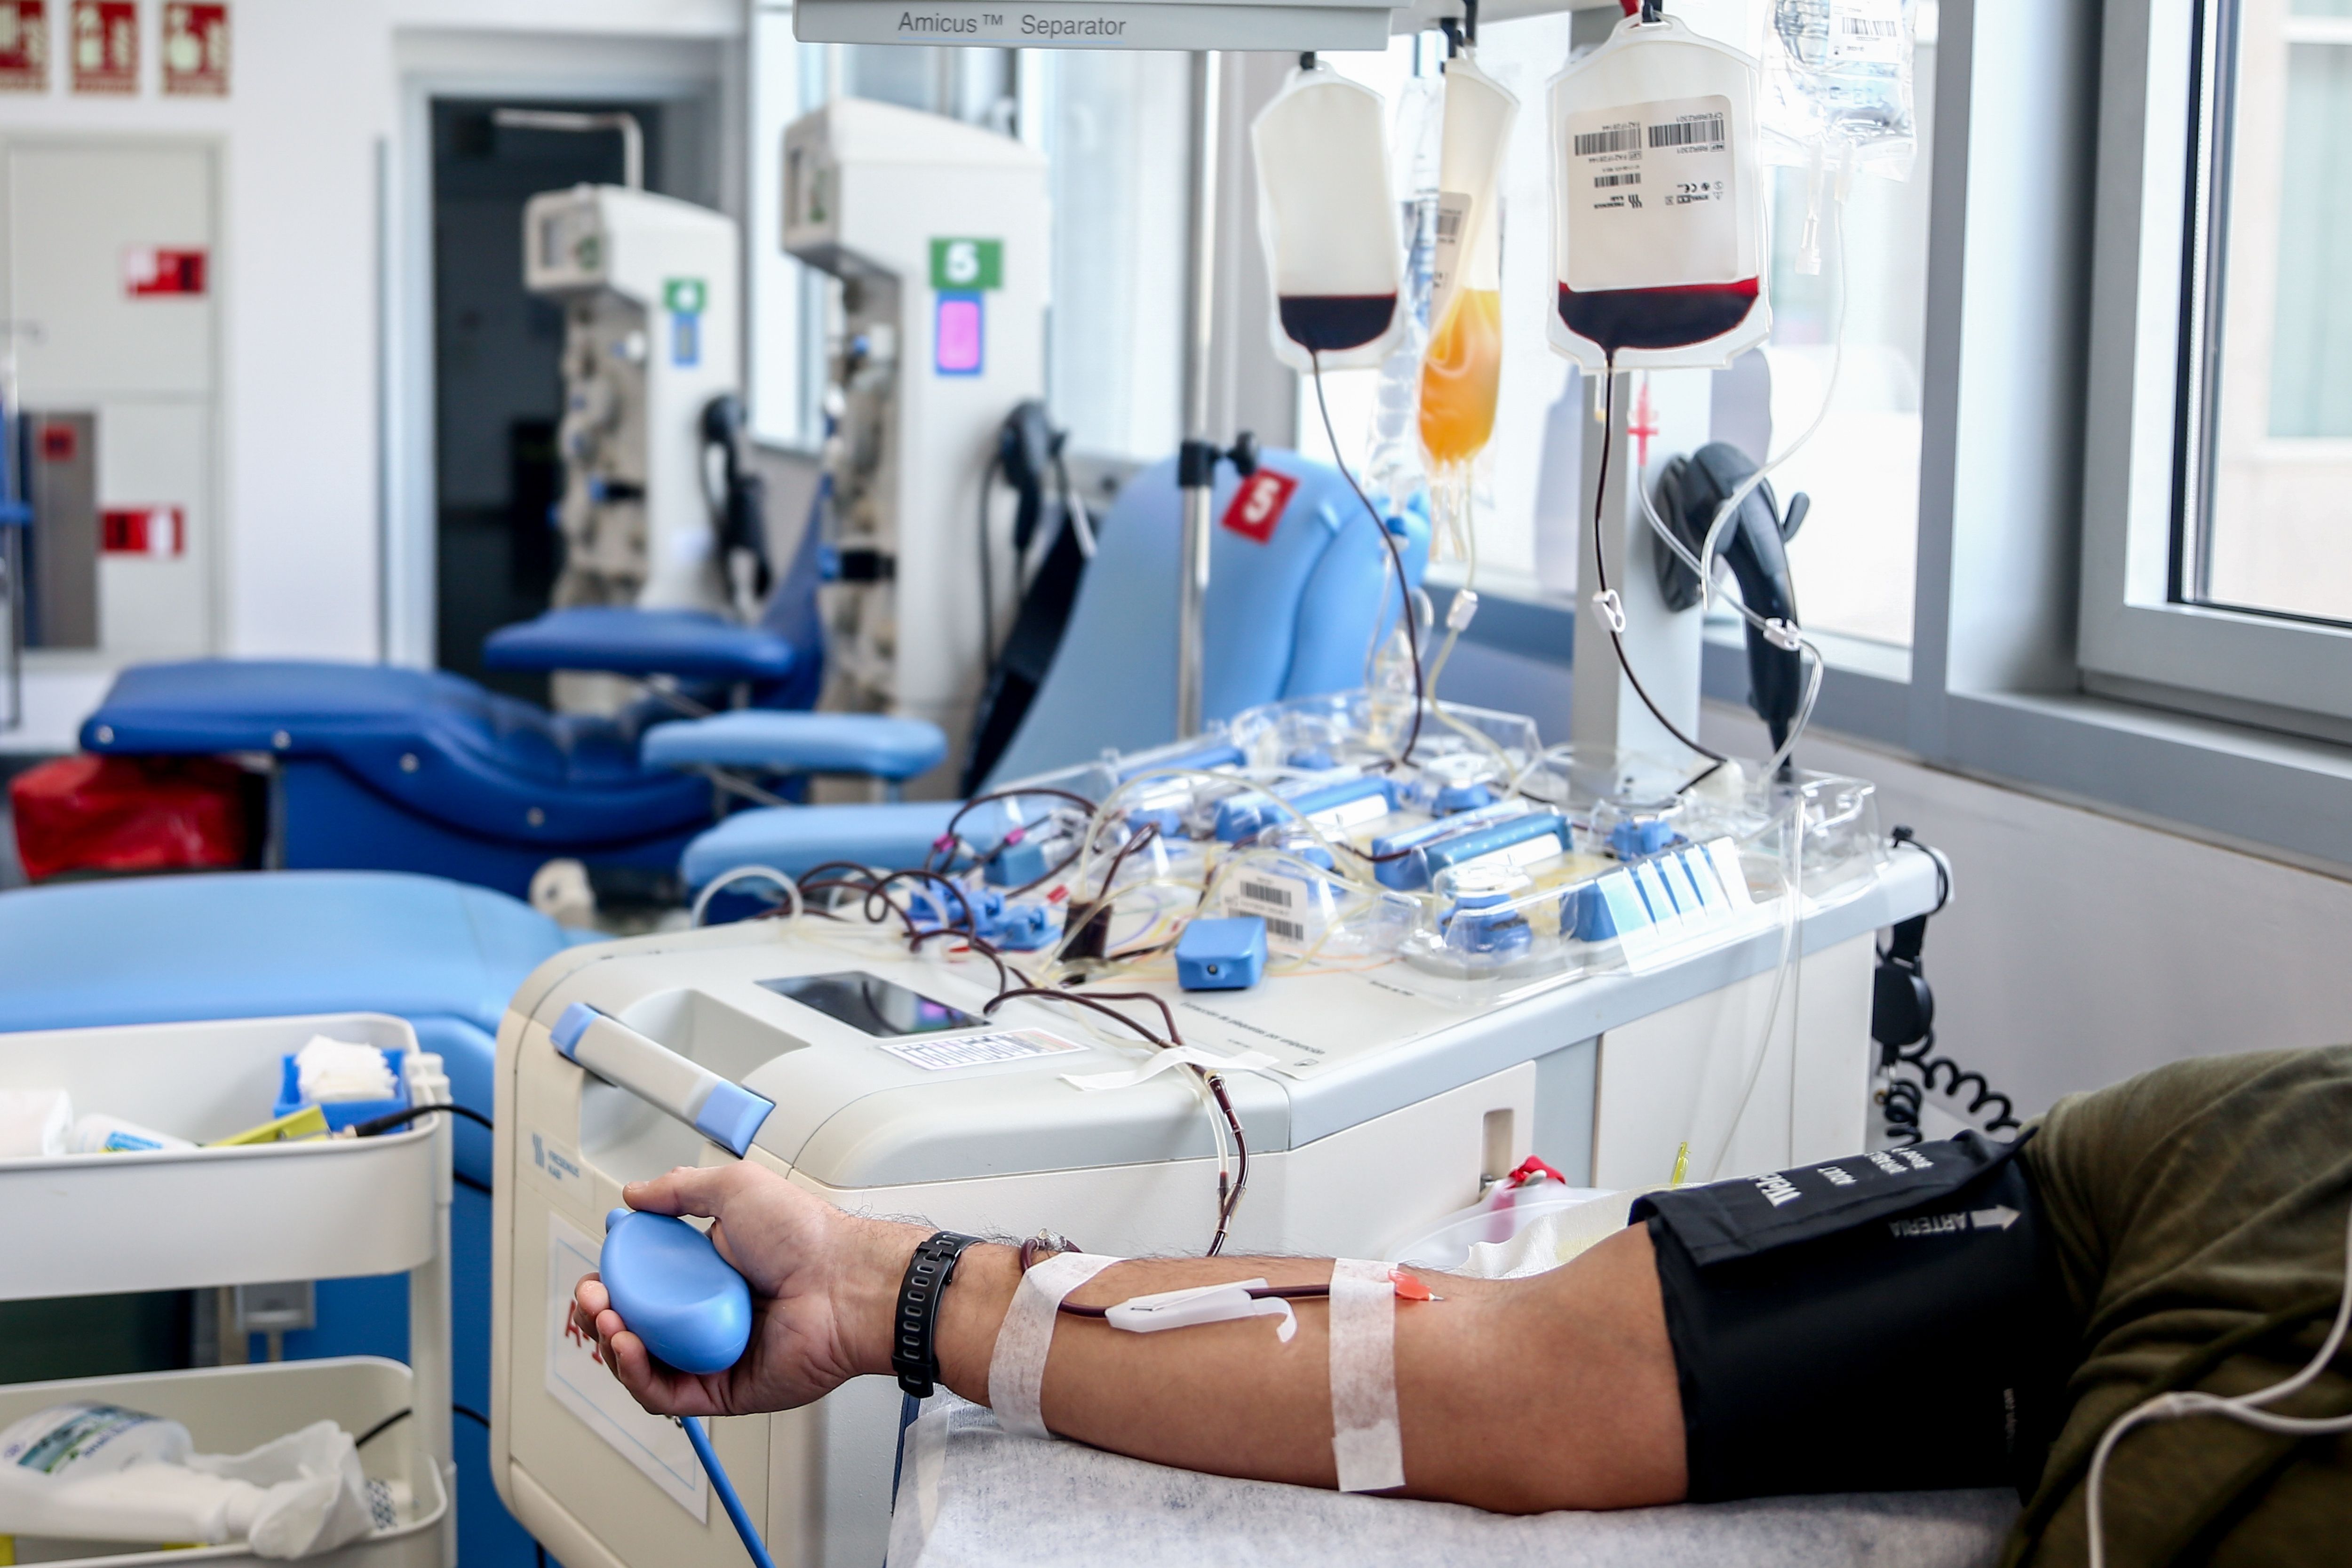 Sanidad hace un llamamiento a donar sangre: "Los puntos de donación son seguros". Foto: Europa Press